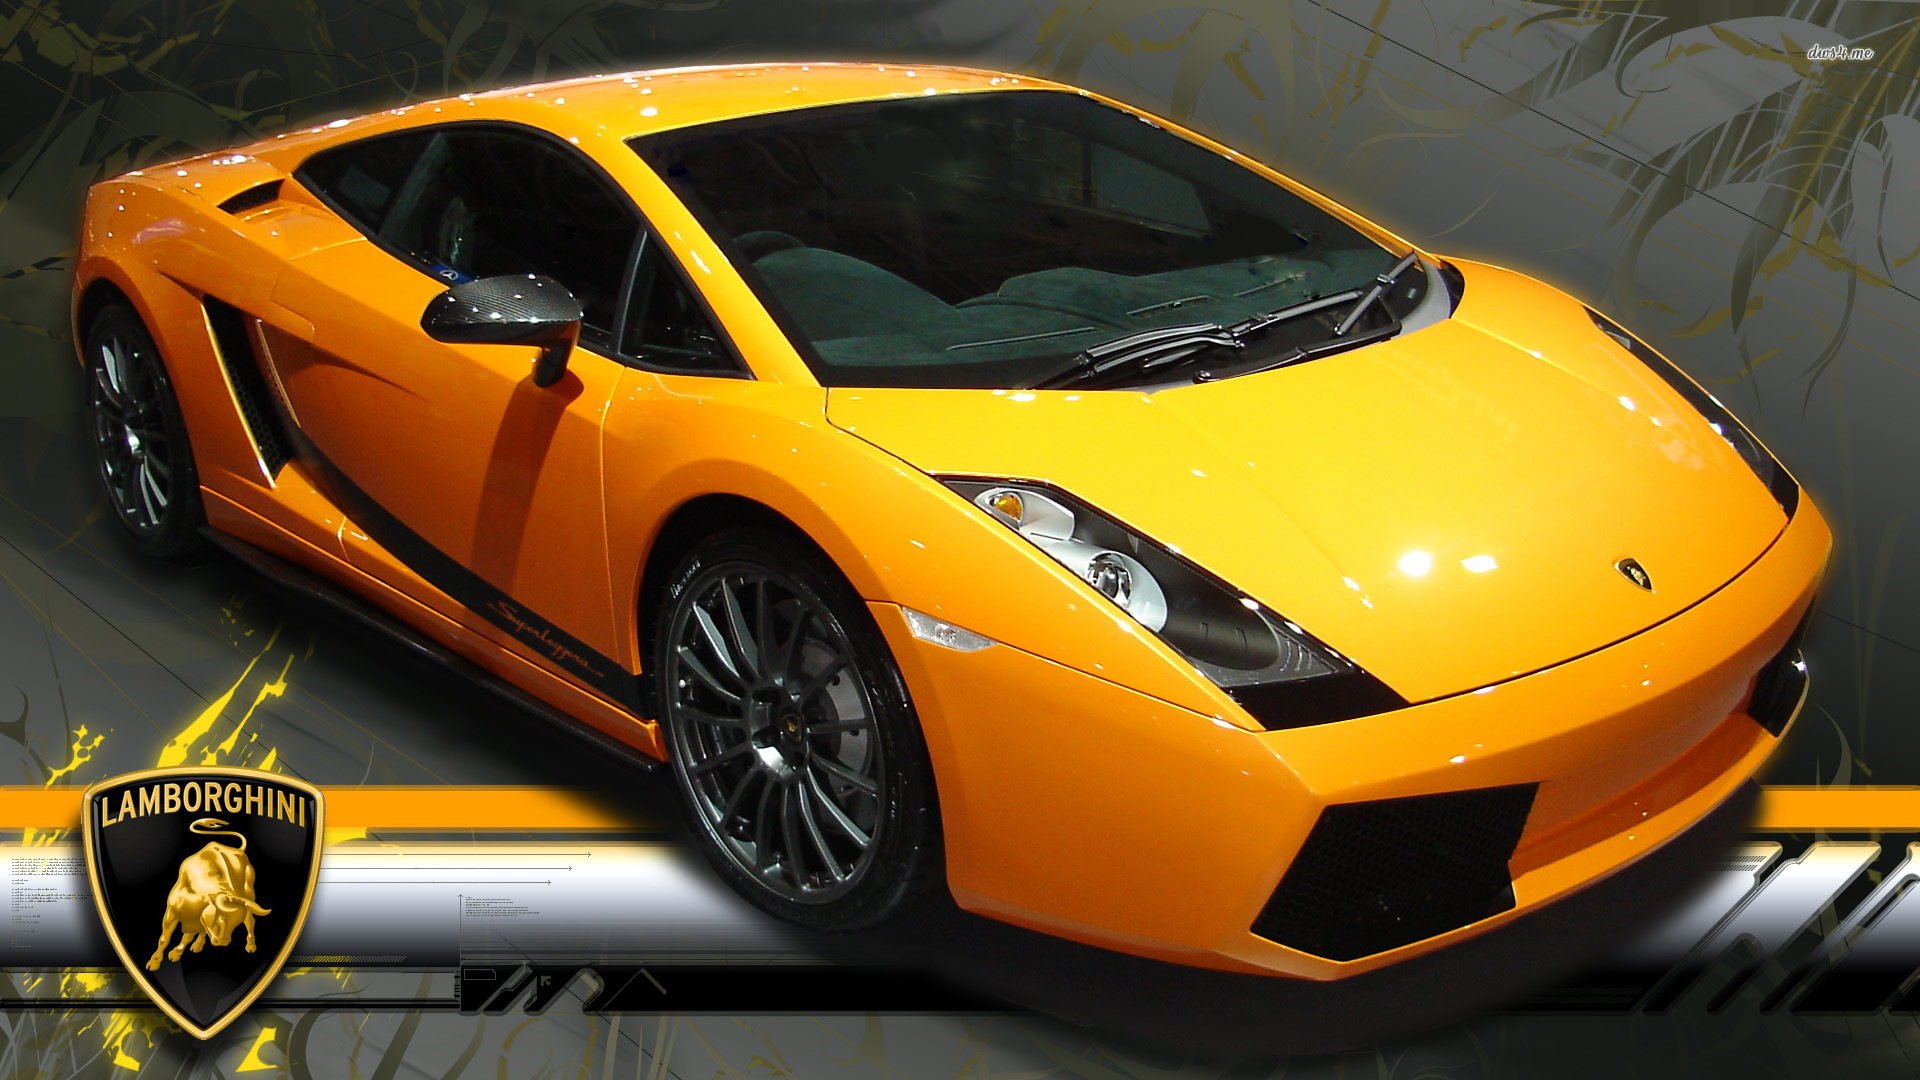 Lamborghini Gallardo, Car, Yellow Cars Wallpapers HD ...